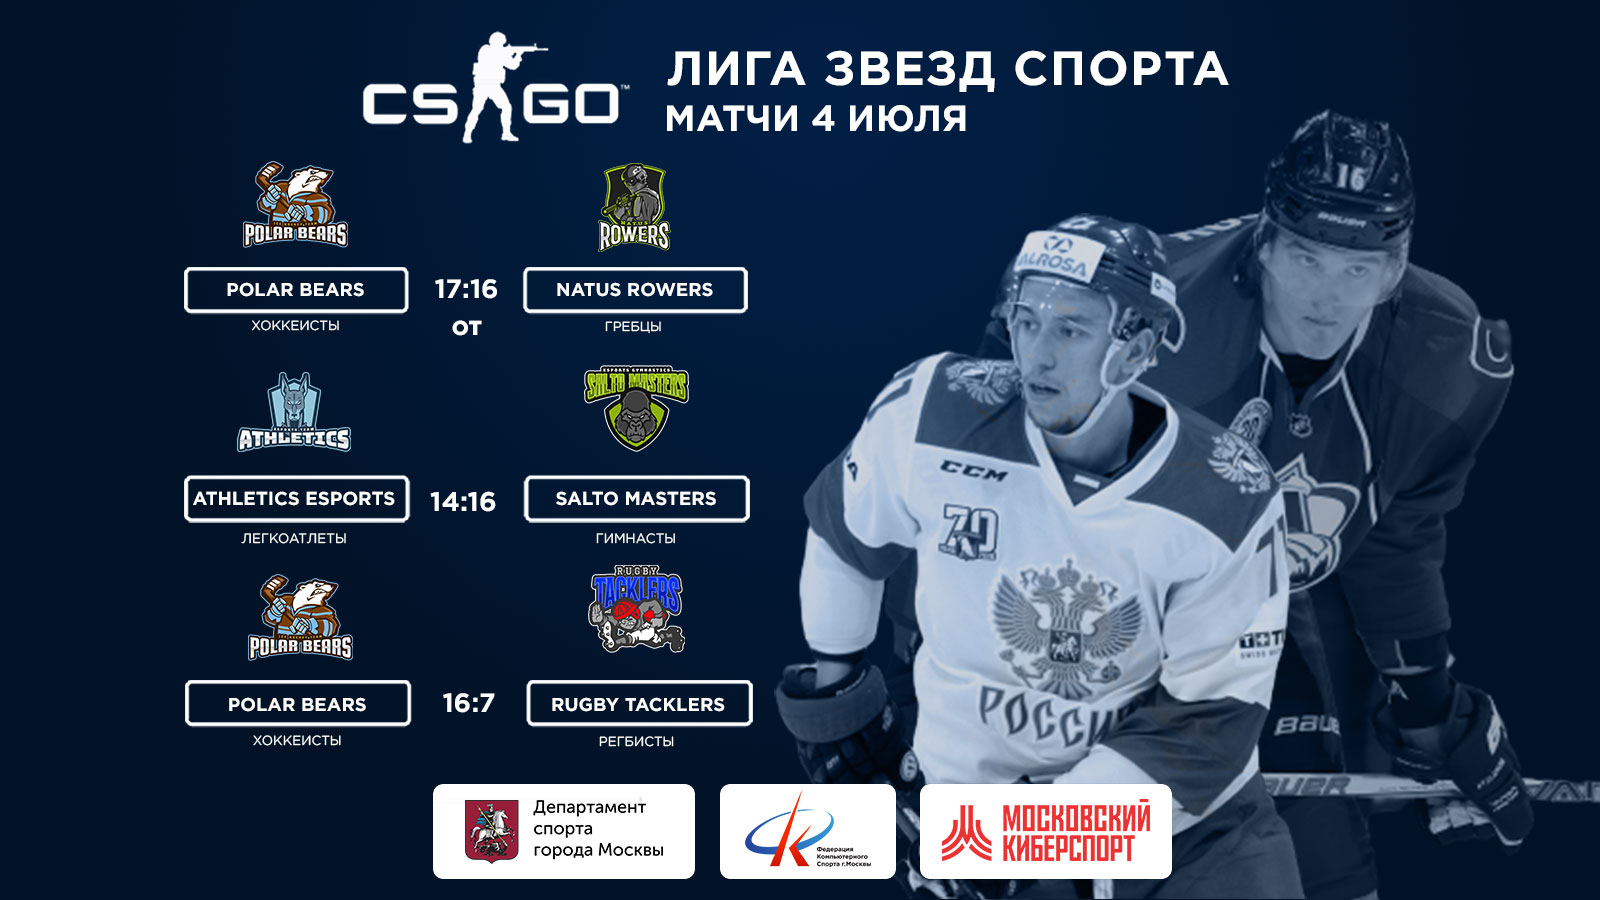 Хоккеисты сборной России выиграли две игры в «Лиге звезд спорта»